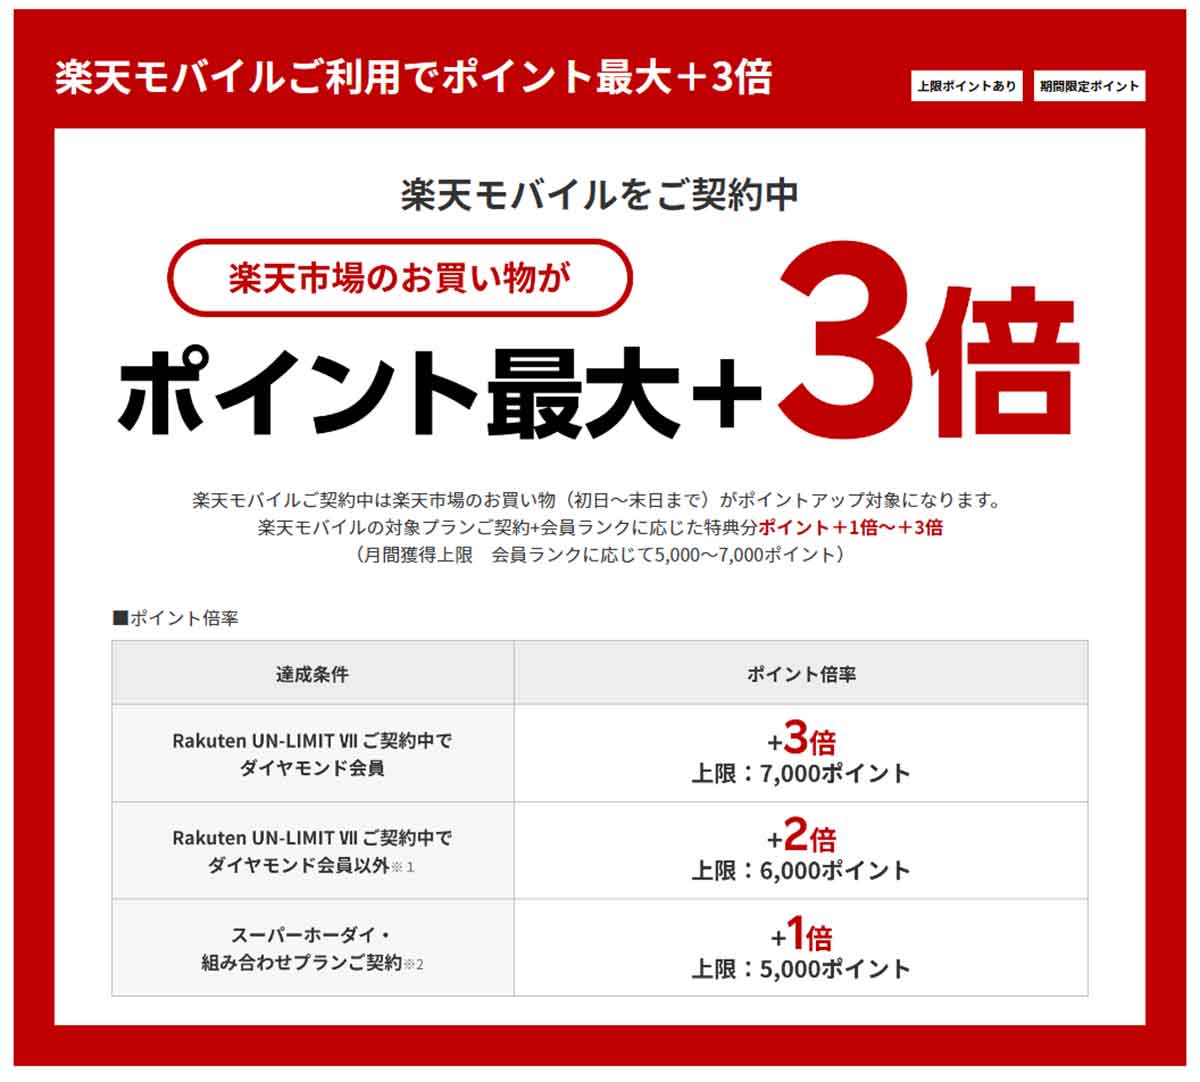 楽天モバイル、11月1日より「SPU」の 「Rakuten UN-LIMIT VII」契約者向け特典をポイント最大+3倍に変更